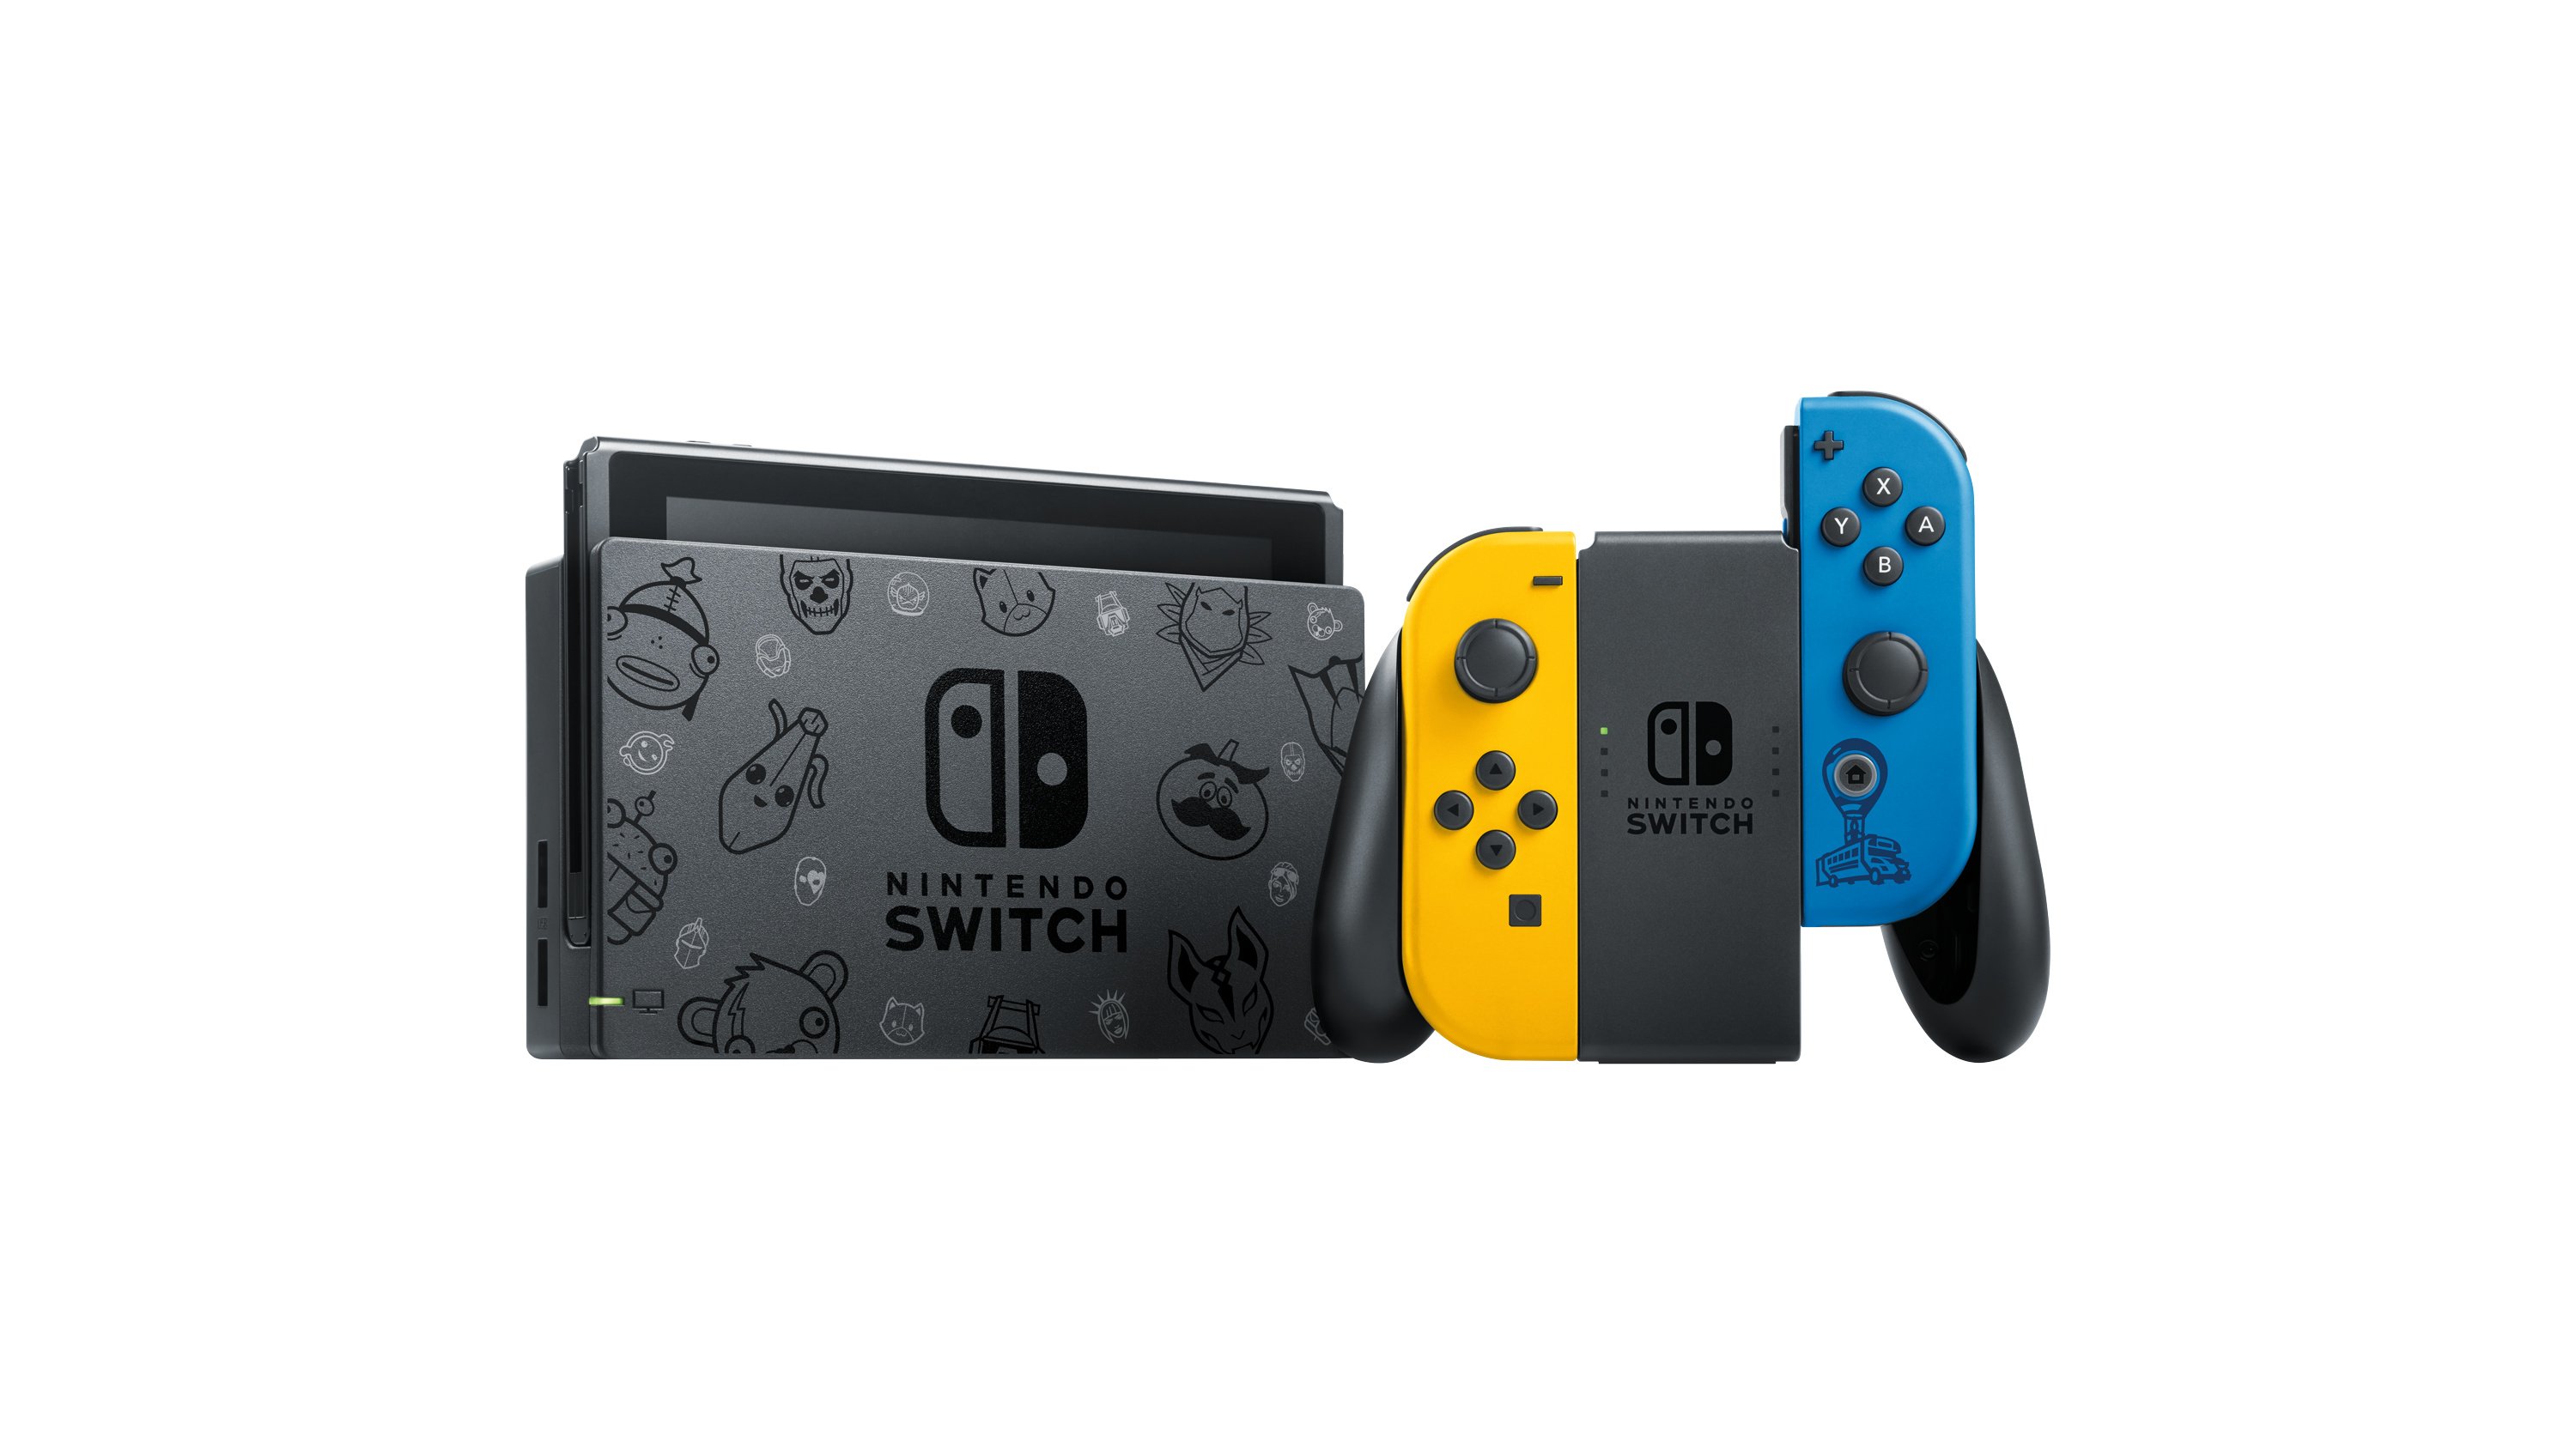 Uma edição limitada Fortnite Nintendo Switch Bundle foi anunciada para a Europa e Austrália / Nova Zelândia Hacs-001-imagepl01-fnyb2.original